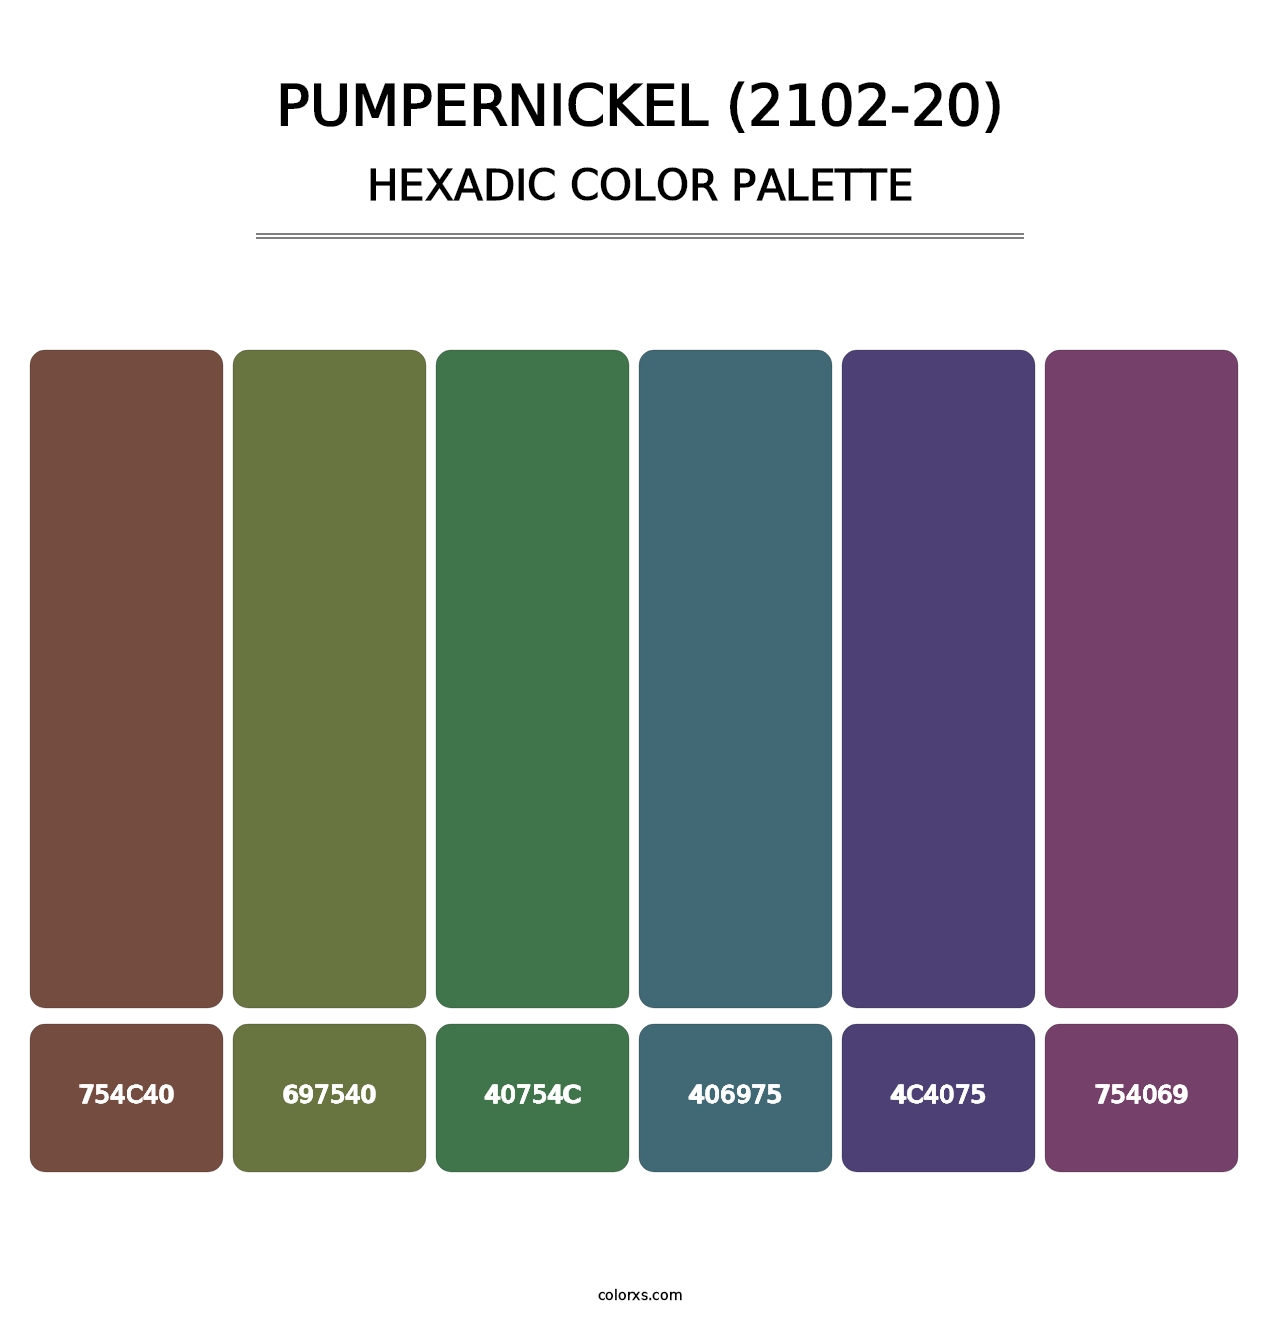 Pumpernickel (2102-20) - Hexadic Color Palette